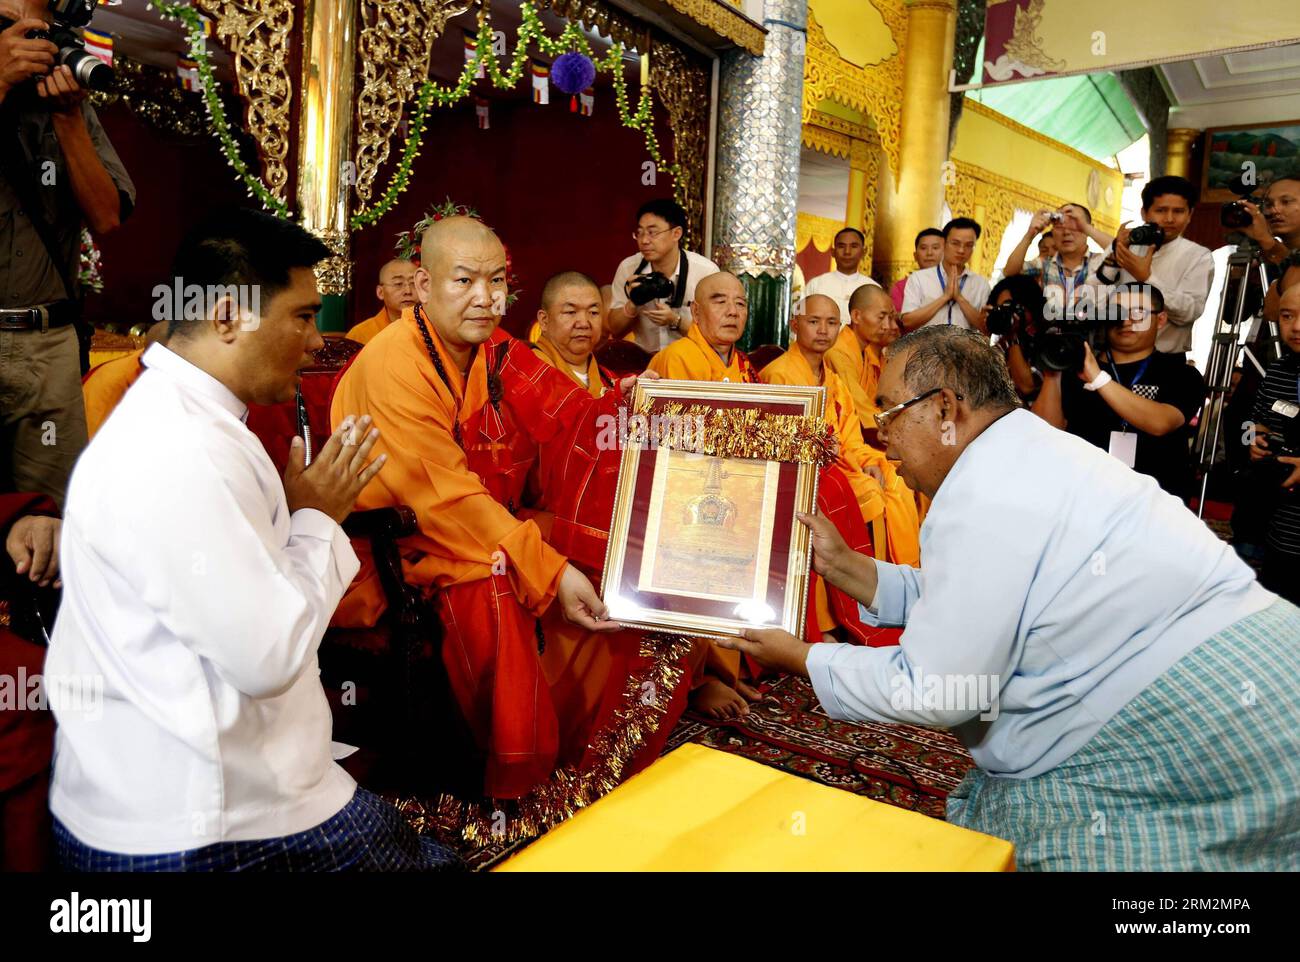 Bildnummer: 59882539 Datum: 21.06.2013 Copyright: imago/Xinhua (130621) -- YANGON, 21. Juni 2013 (Xinhua) -- Ein Zertifikat wird zwischen chinesischen und Myanmar-buddhistischen Meistern während der Übergabe einer Sakyamuni-Zahn-Relikt-Stupa-Replik an der Shwedagon-Pagode in Yangon, Myanmar, 21. Juni 2013 ausgetauscht. Eine große religiöse Zeremonie der Übergabe und Verwahrung einer Sakyamuni-Zahn-Reliquien-Stupa-Nachbildung aus China fand am Freitag in der Shwedagon-Pagode in Myanmar in Yangon statt. (Xinhua/U Aung)(bxq) MYANMAR-YANGON-RELIGION PUBLICATIONxNOTxINxCHN Gesellschaft Religion Buddhismus Buddhisten fest Reliquie x Stockfoto